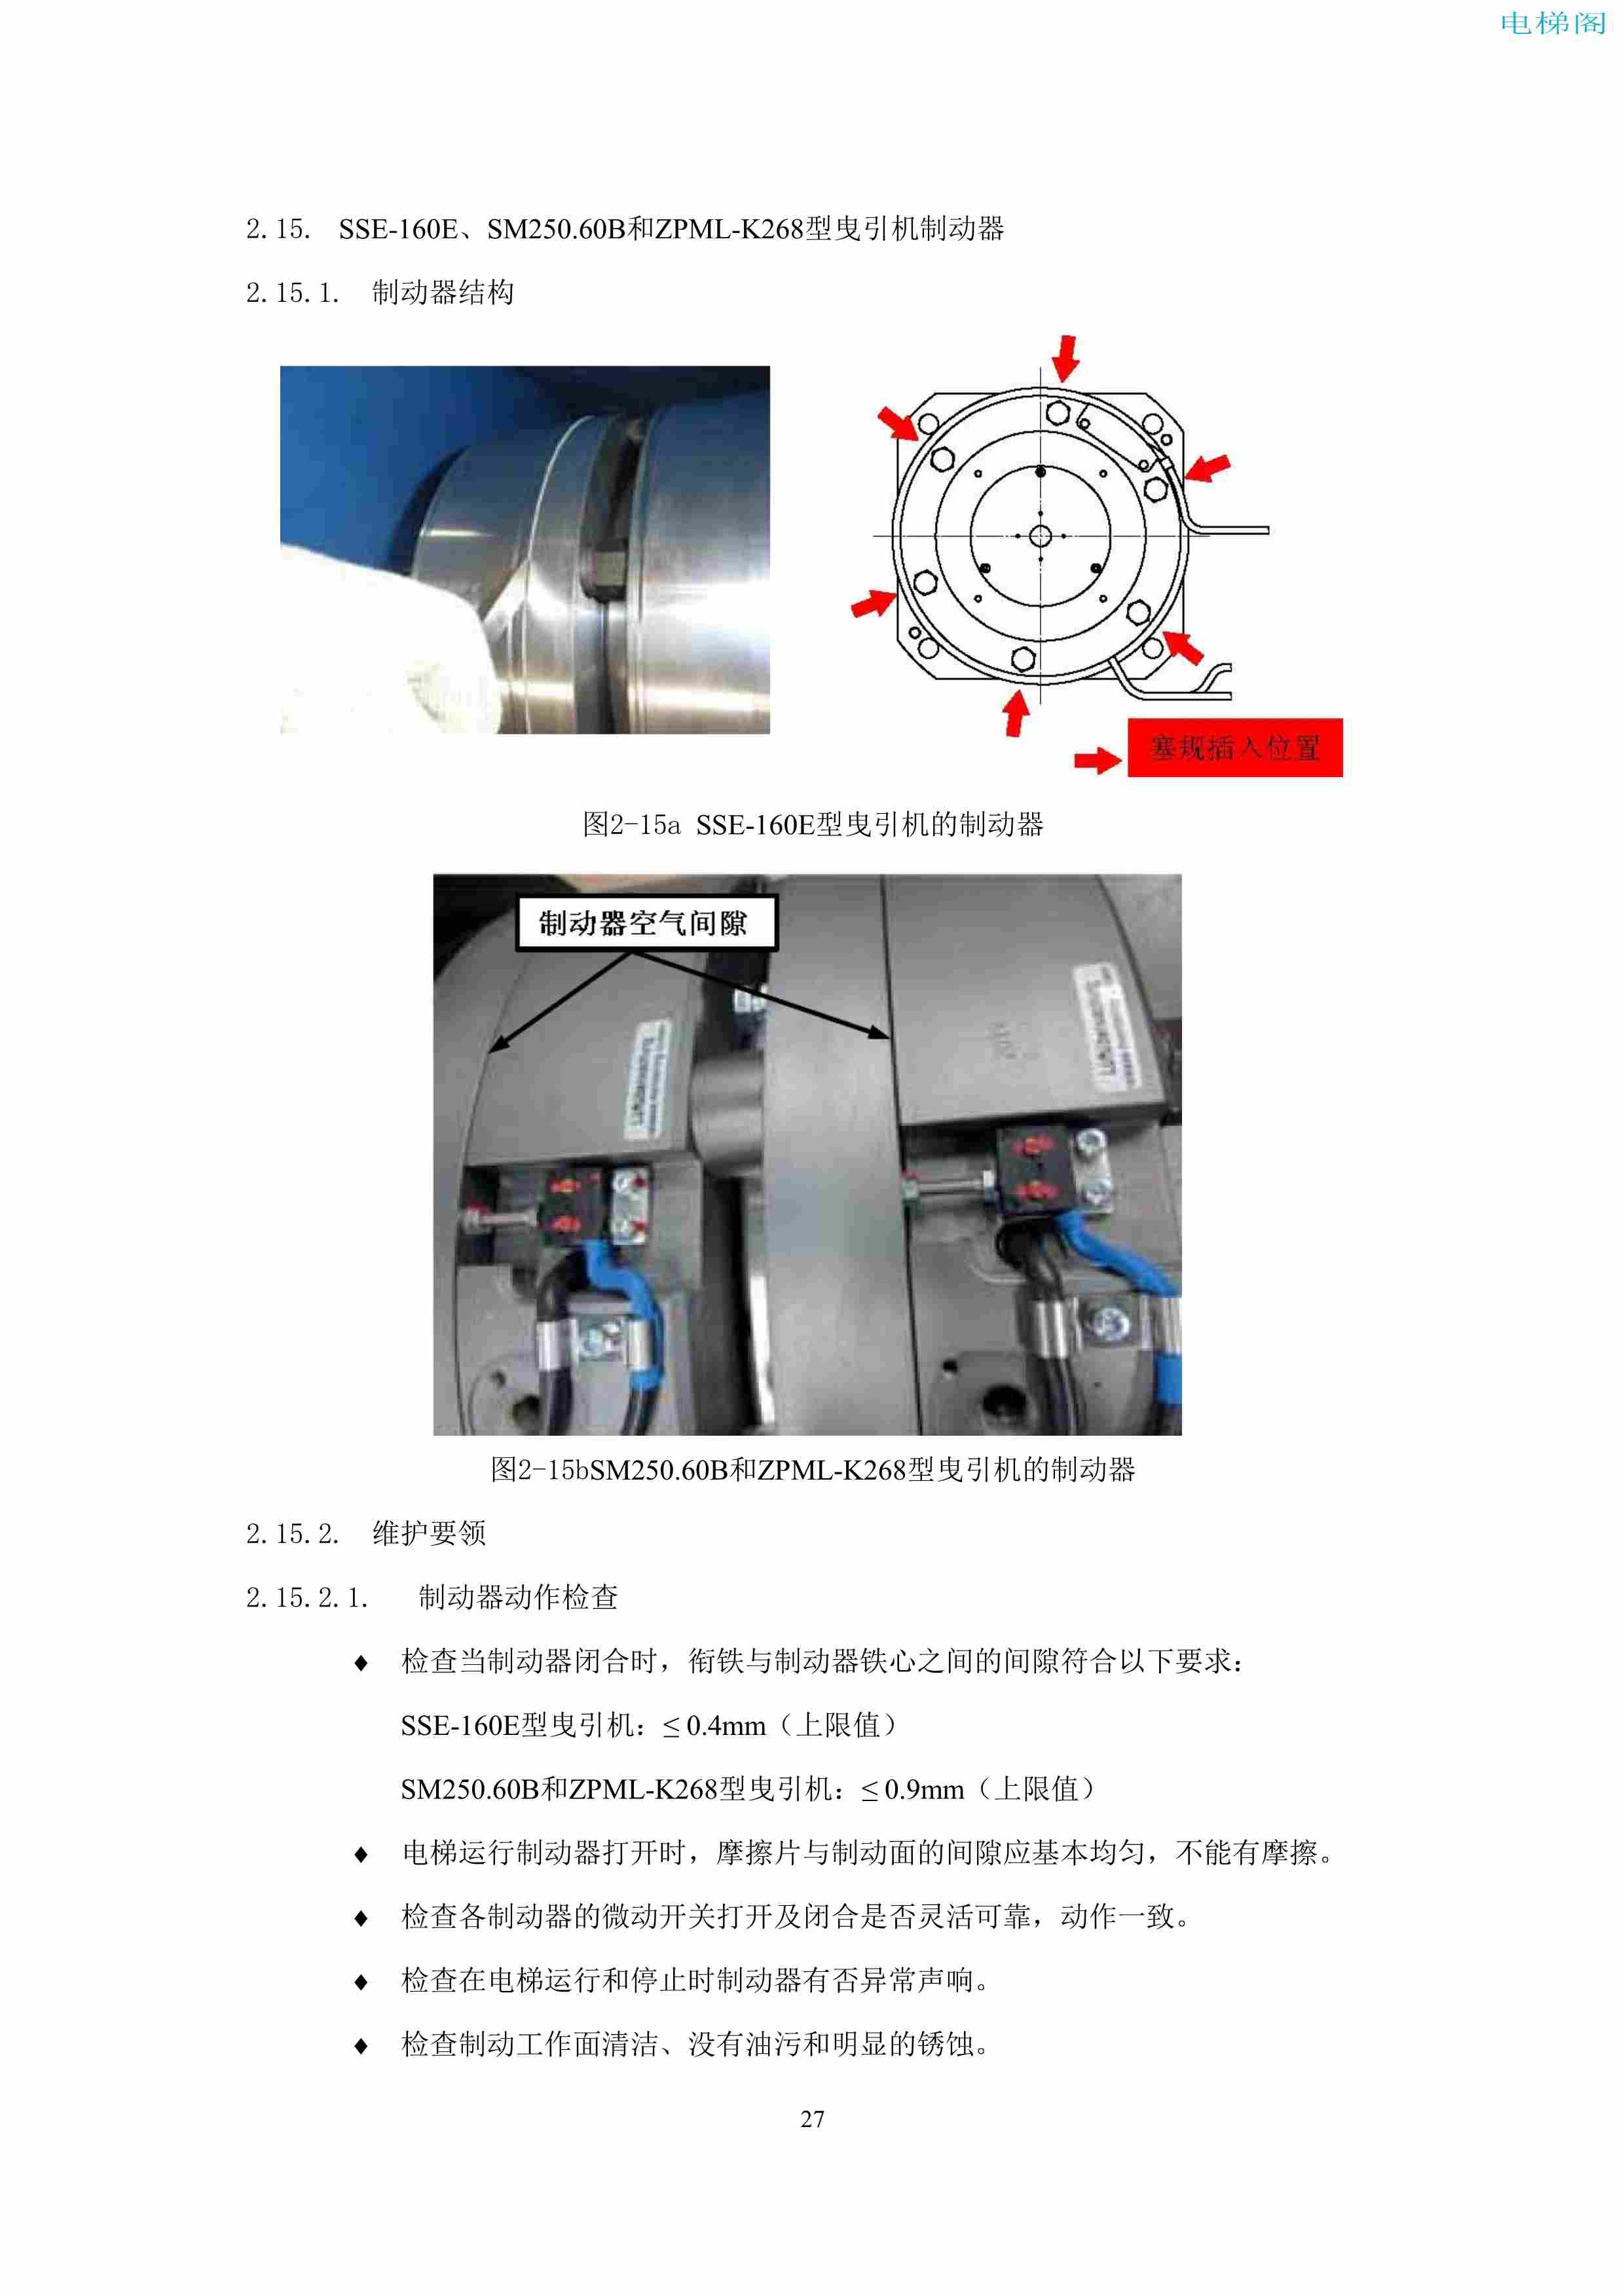 上海三菱电梯有限公司电梯制动器维护作业要领汇编_29.jpg